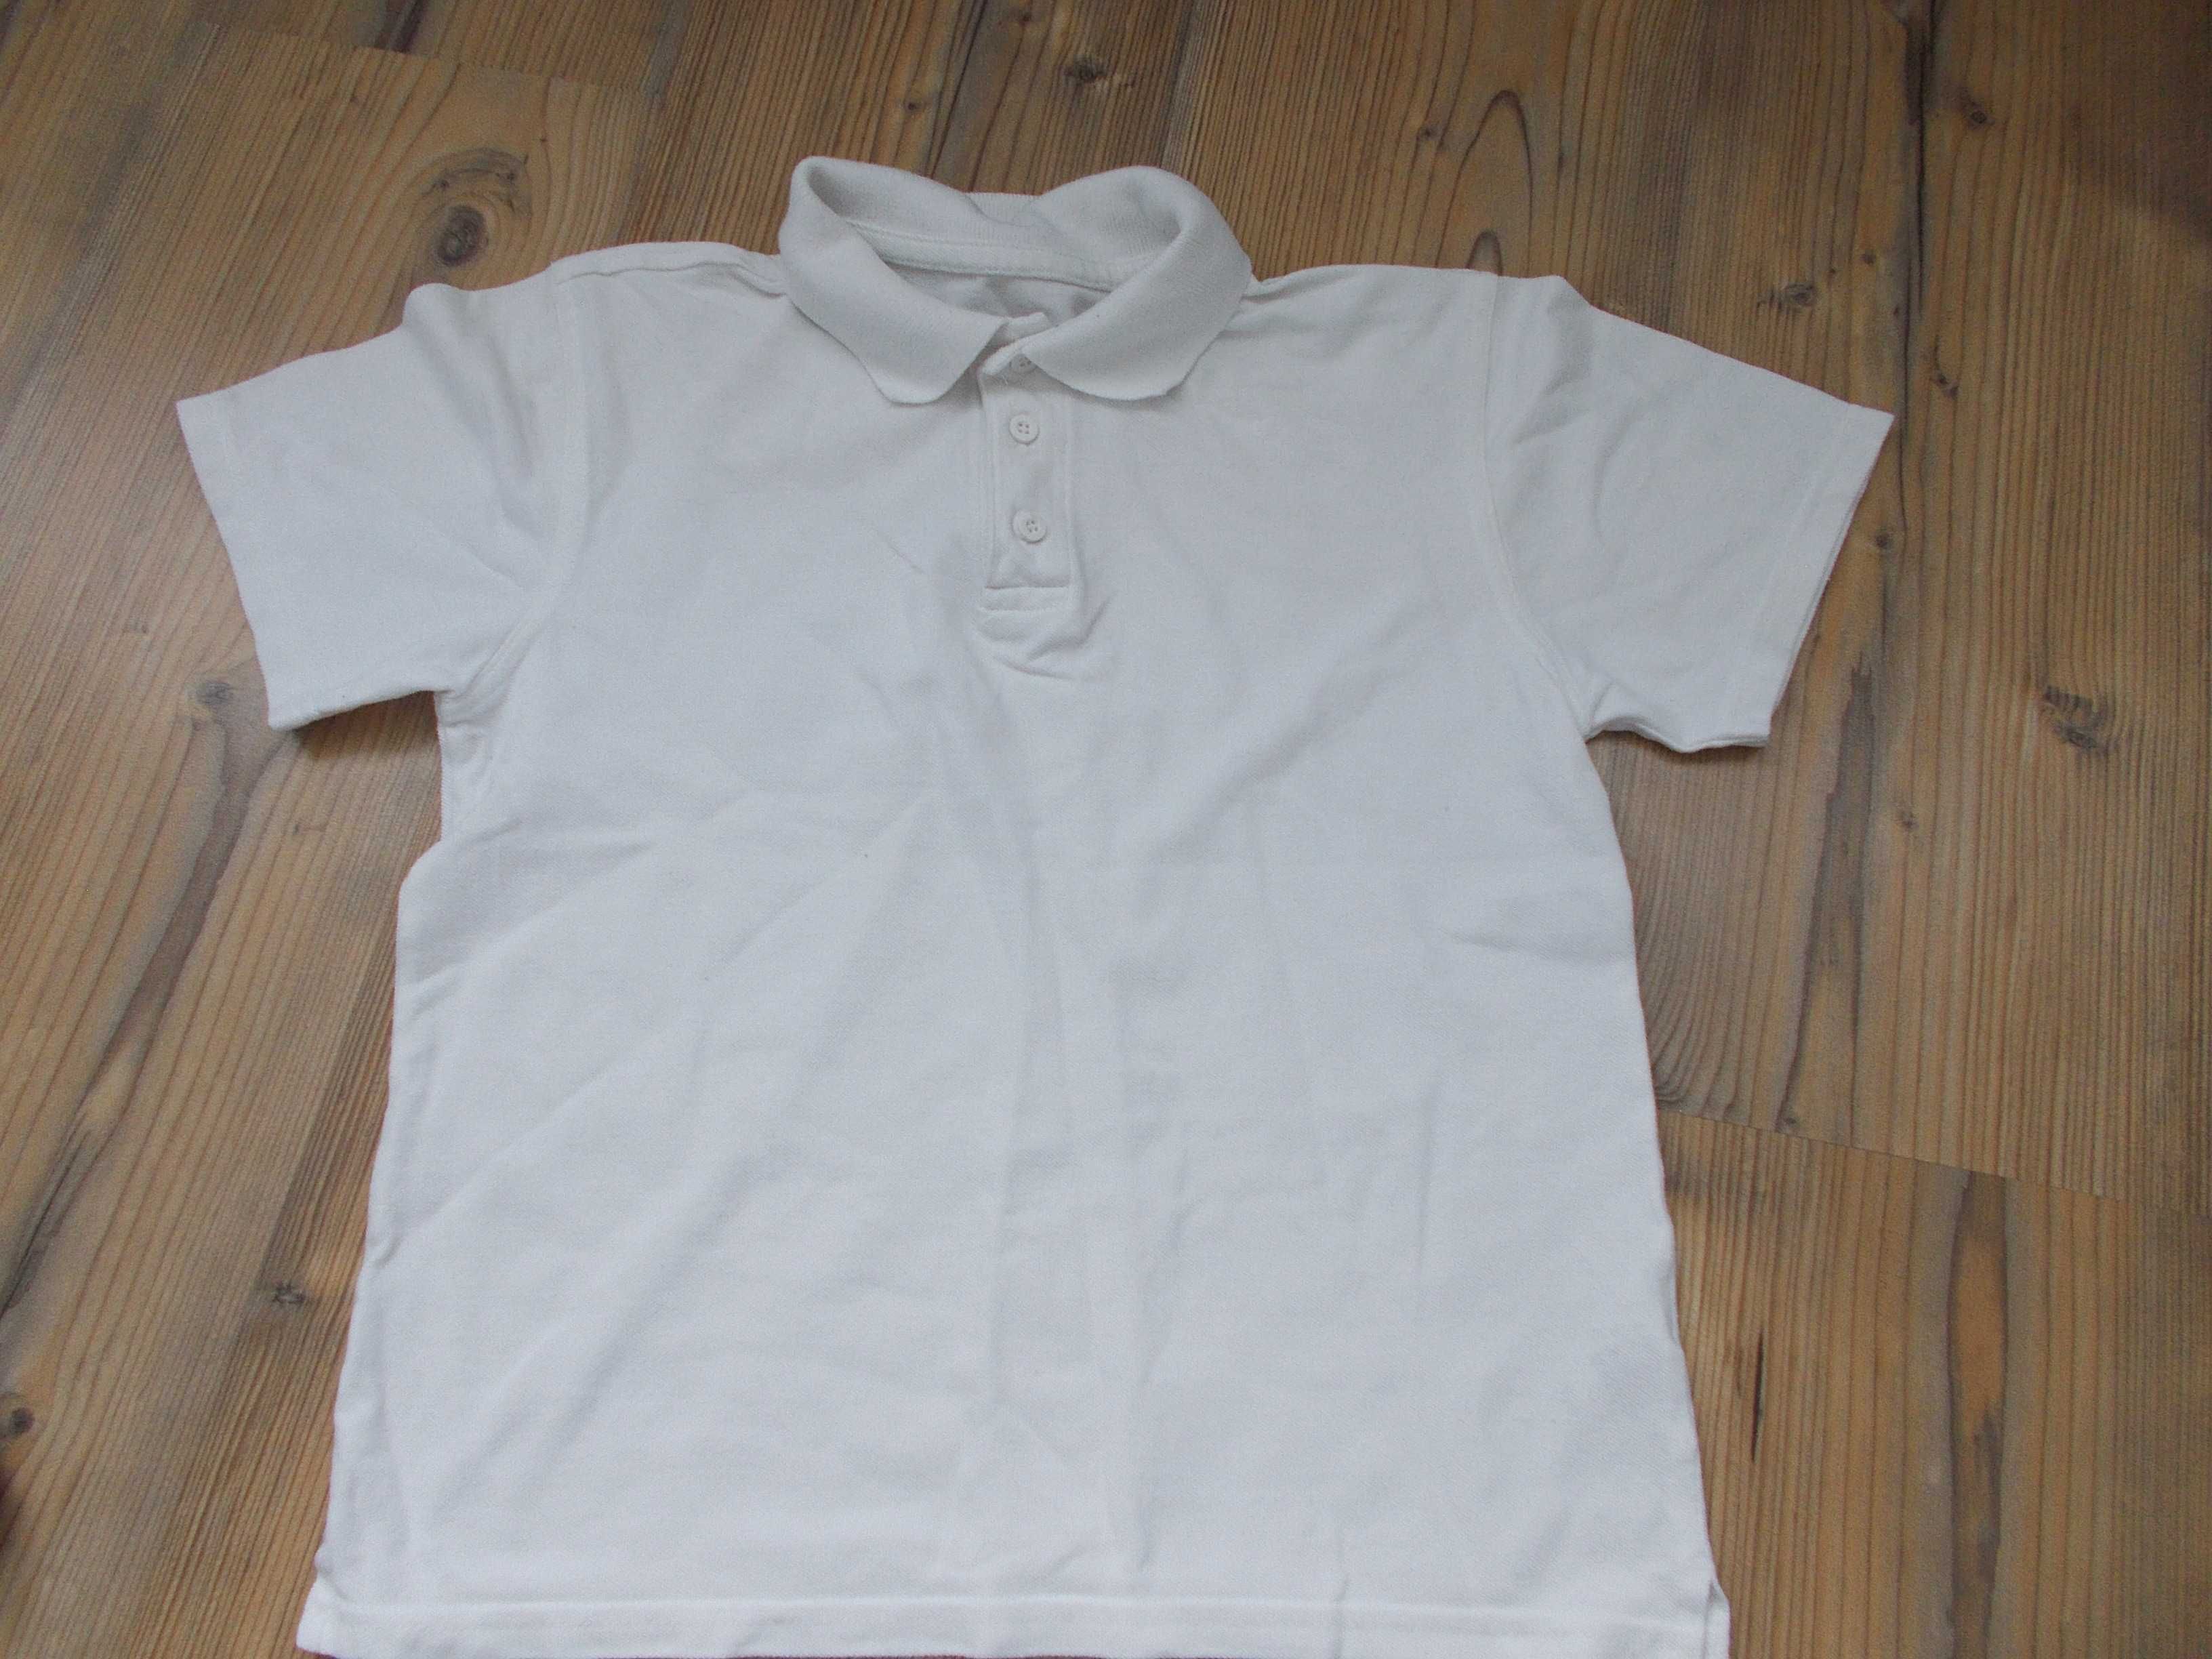 Zestaw dla chłopca 134/140 spodnie koszule bluzeczki